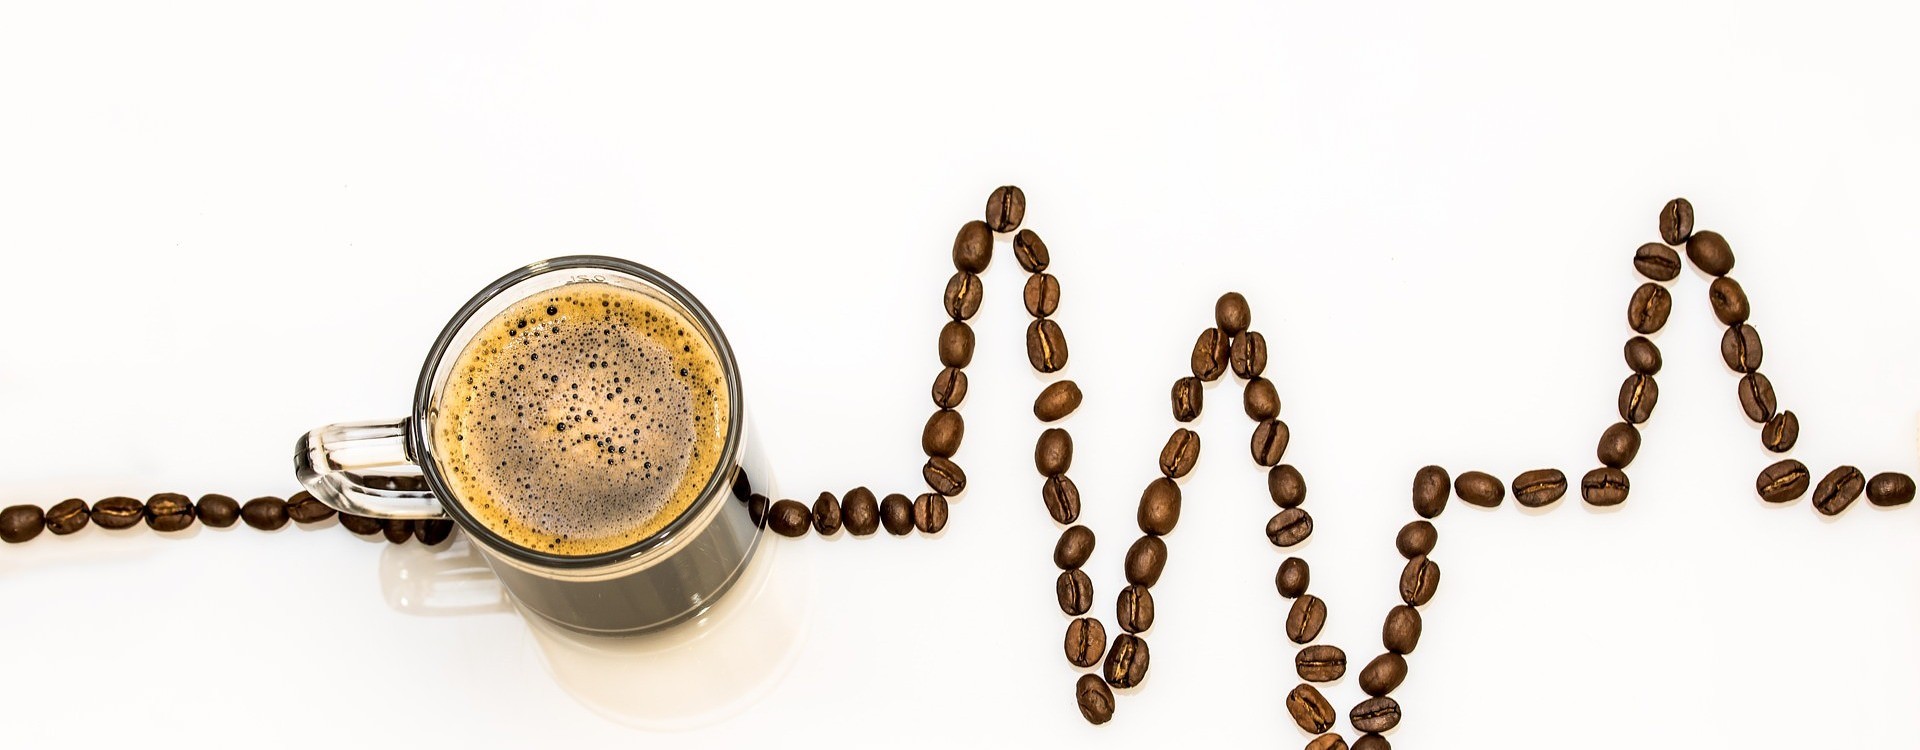 Cómo actúa la cafeína en nuestro cerebro? - CaféTéArte